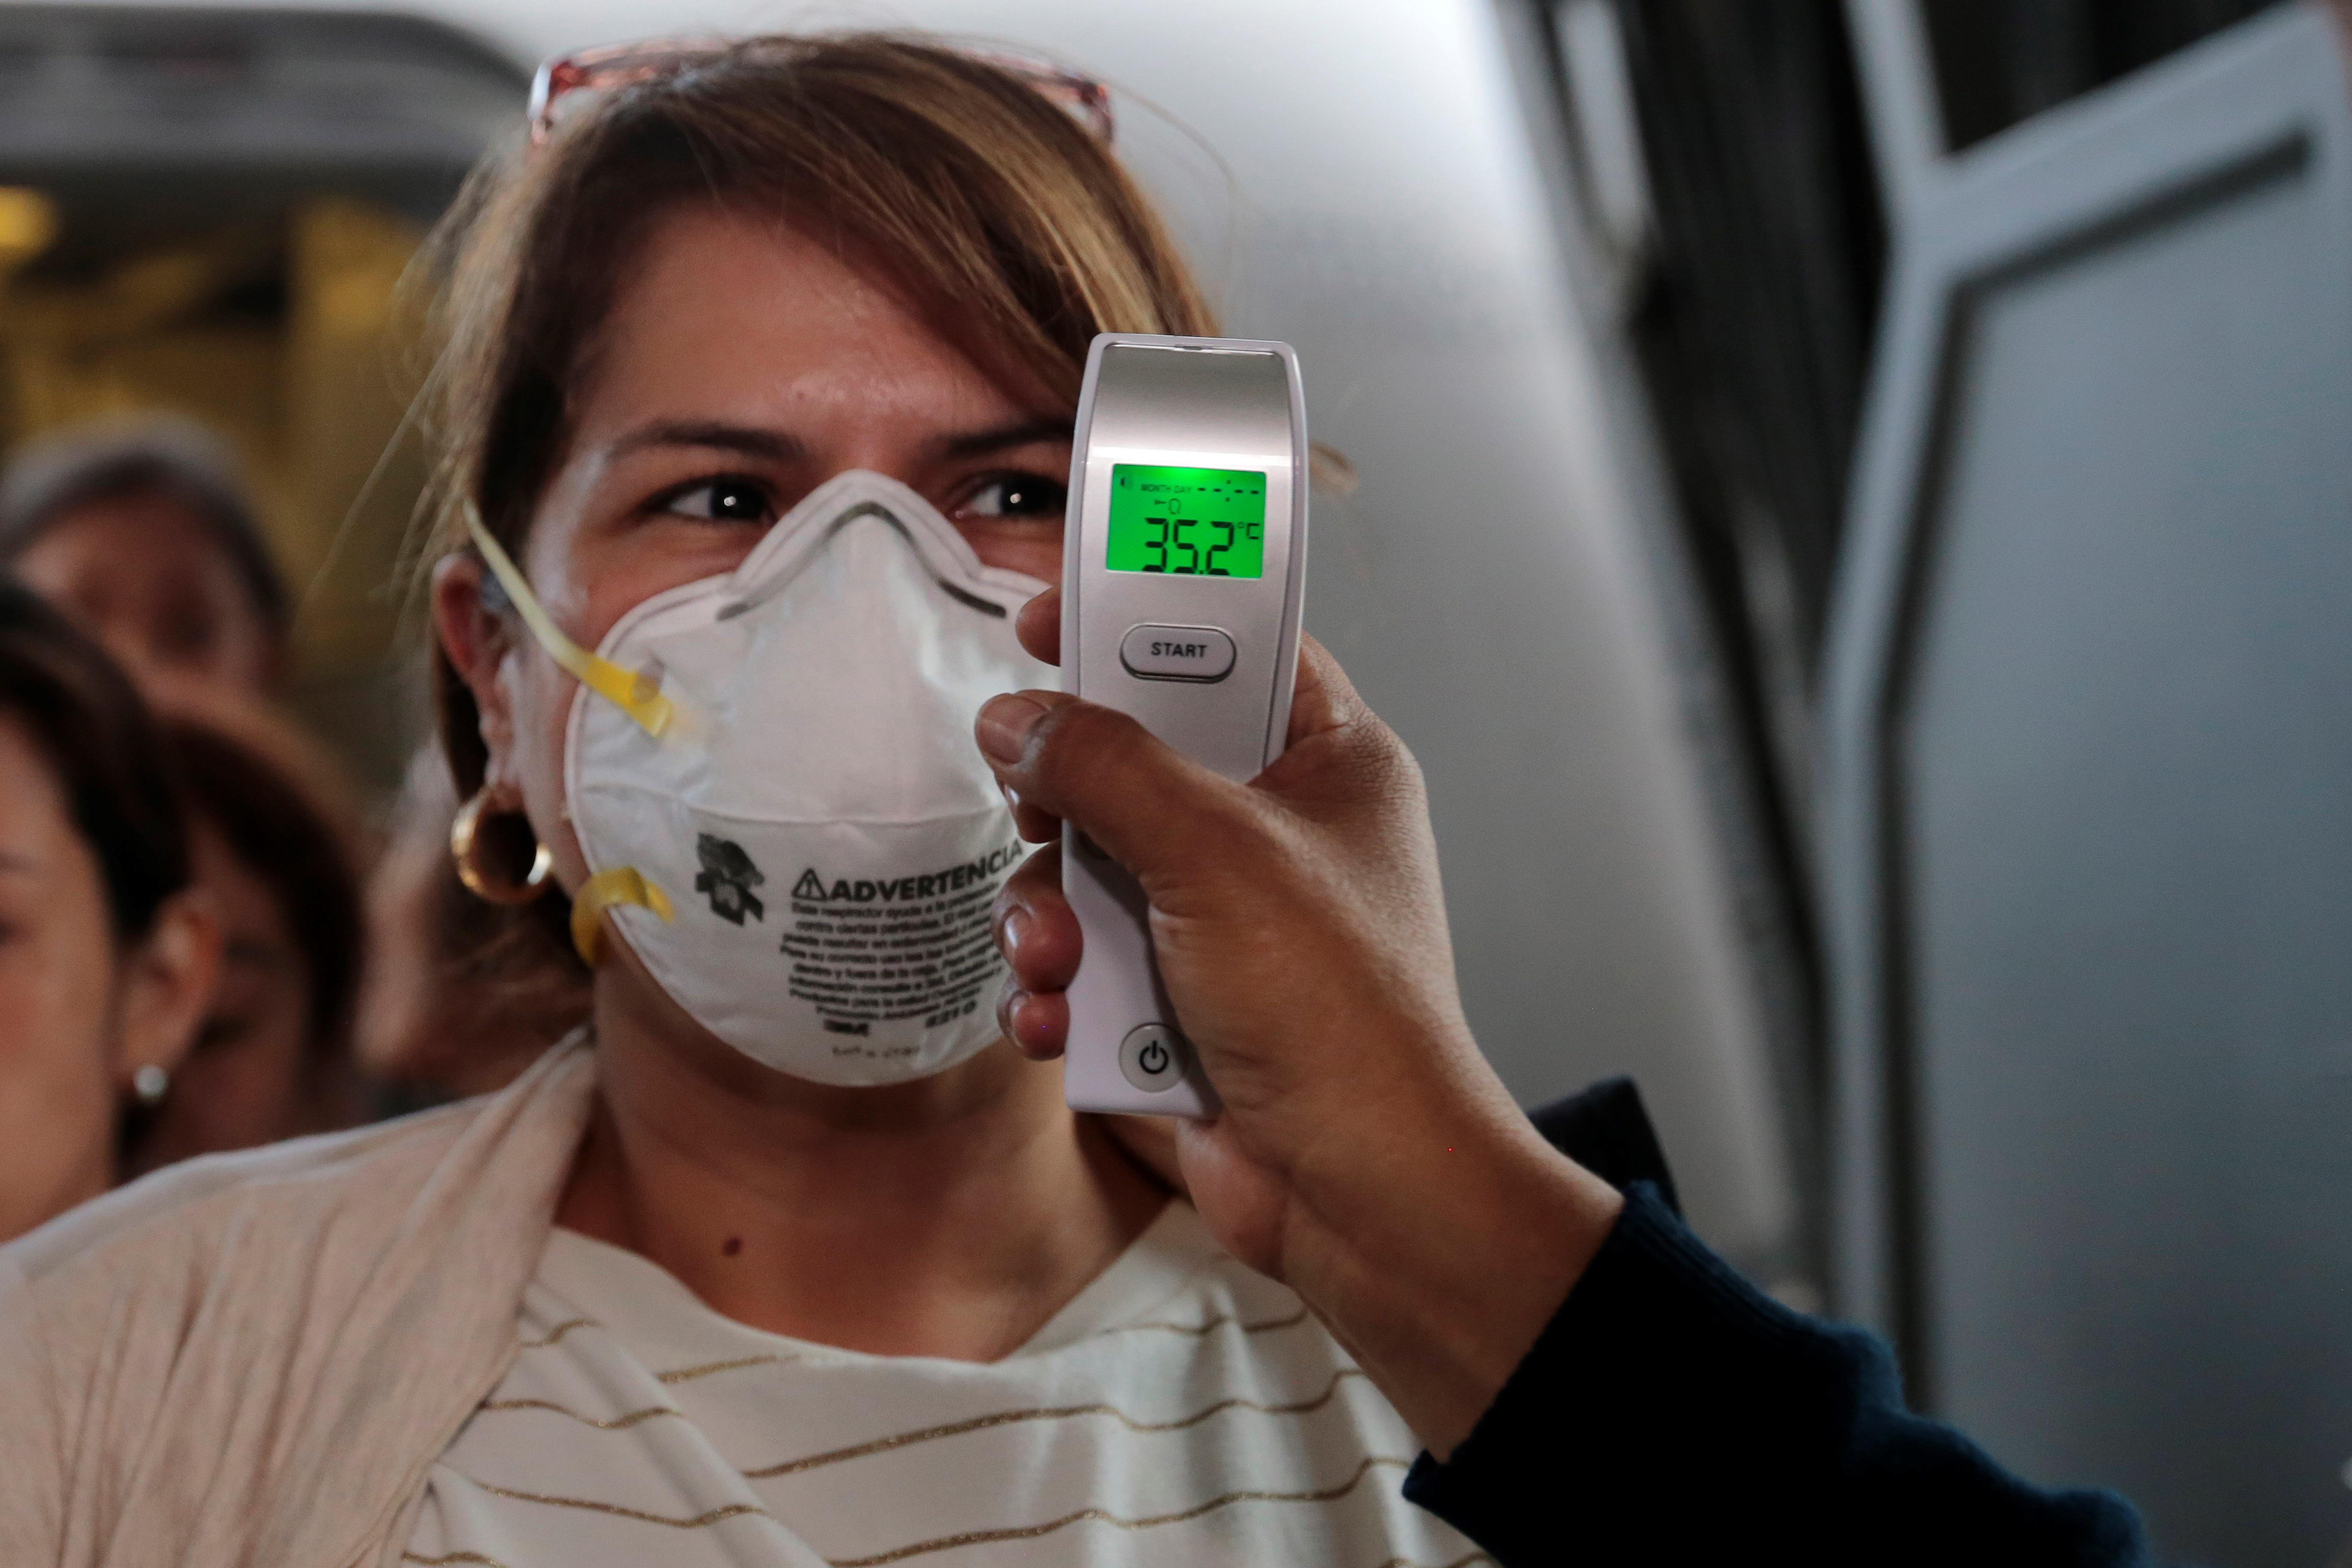 En el ingreso del Aeropuerto Internacional Aurora toman la temperatura a los viajeros como prevención del coronavirus. (Foto Prensa Libre: EFE)